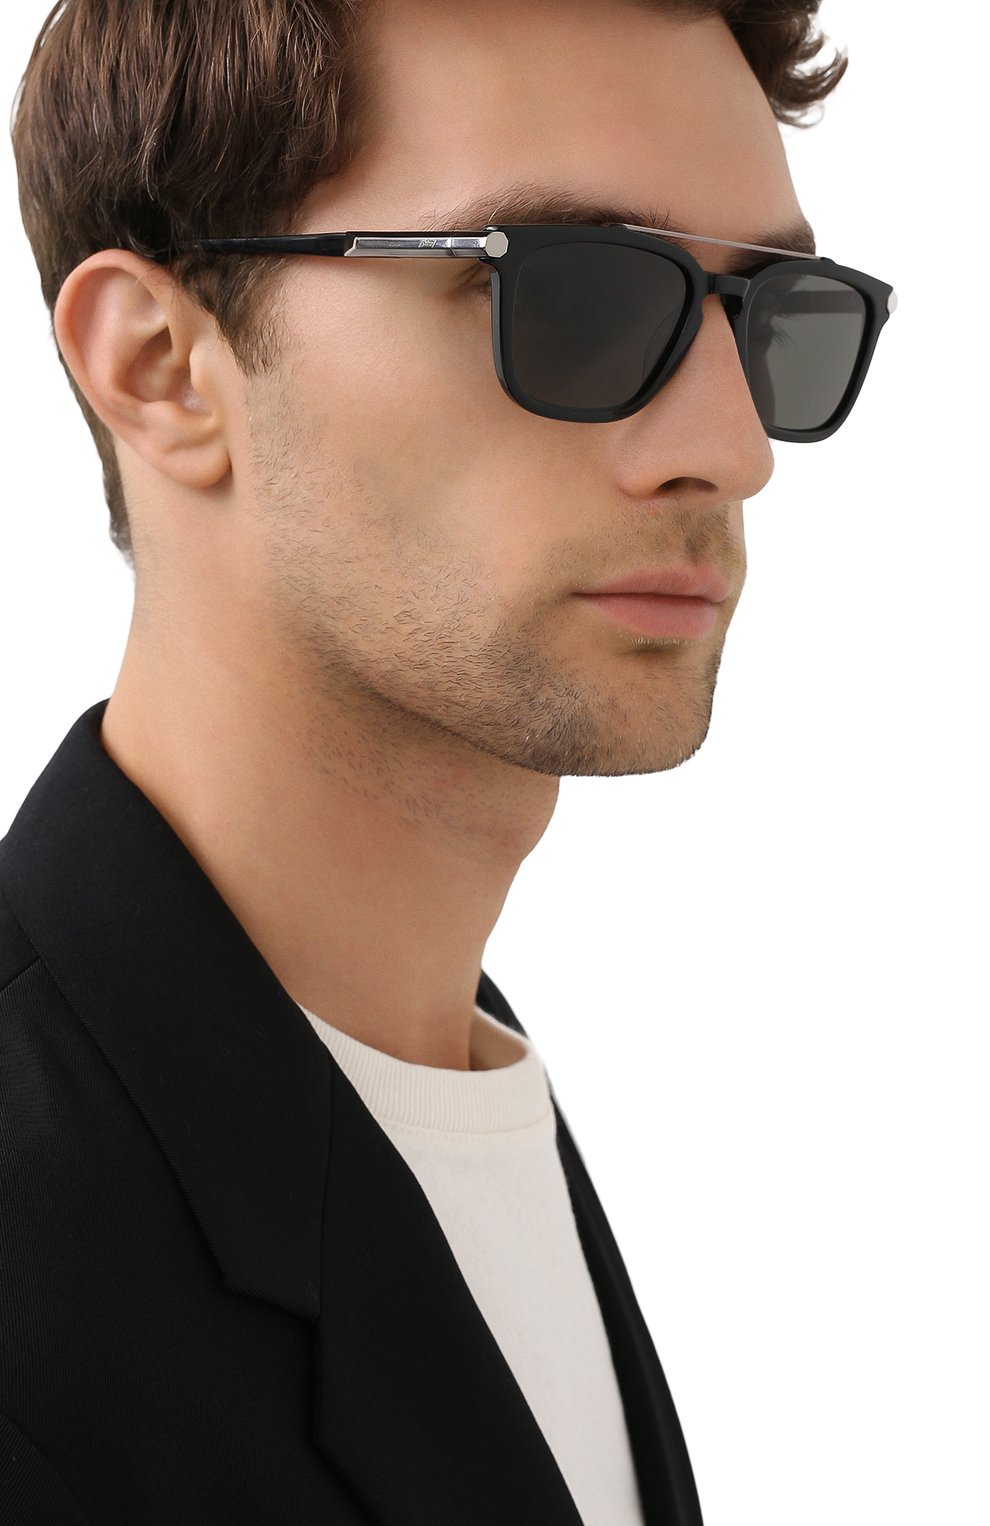 Классические солнцезащитные очки мужские. Очки Бриони мужские. Солнцезащитные очки Brioni мужские. Классические очки мужские.